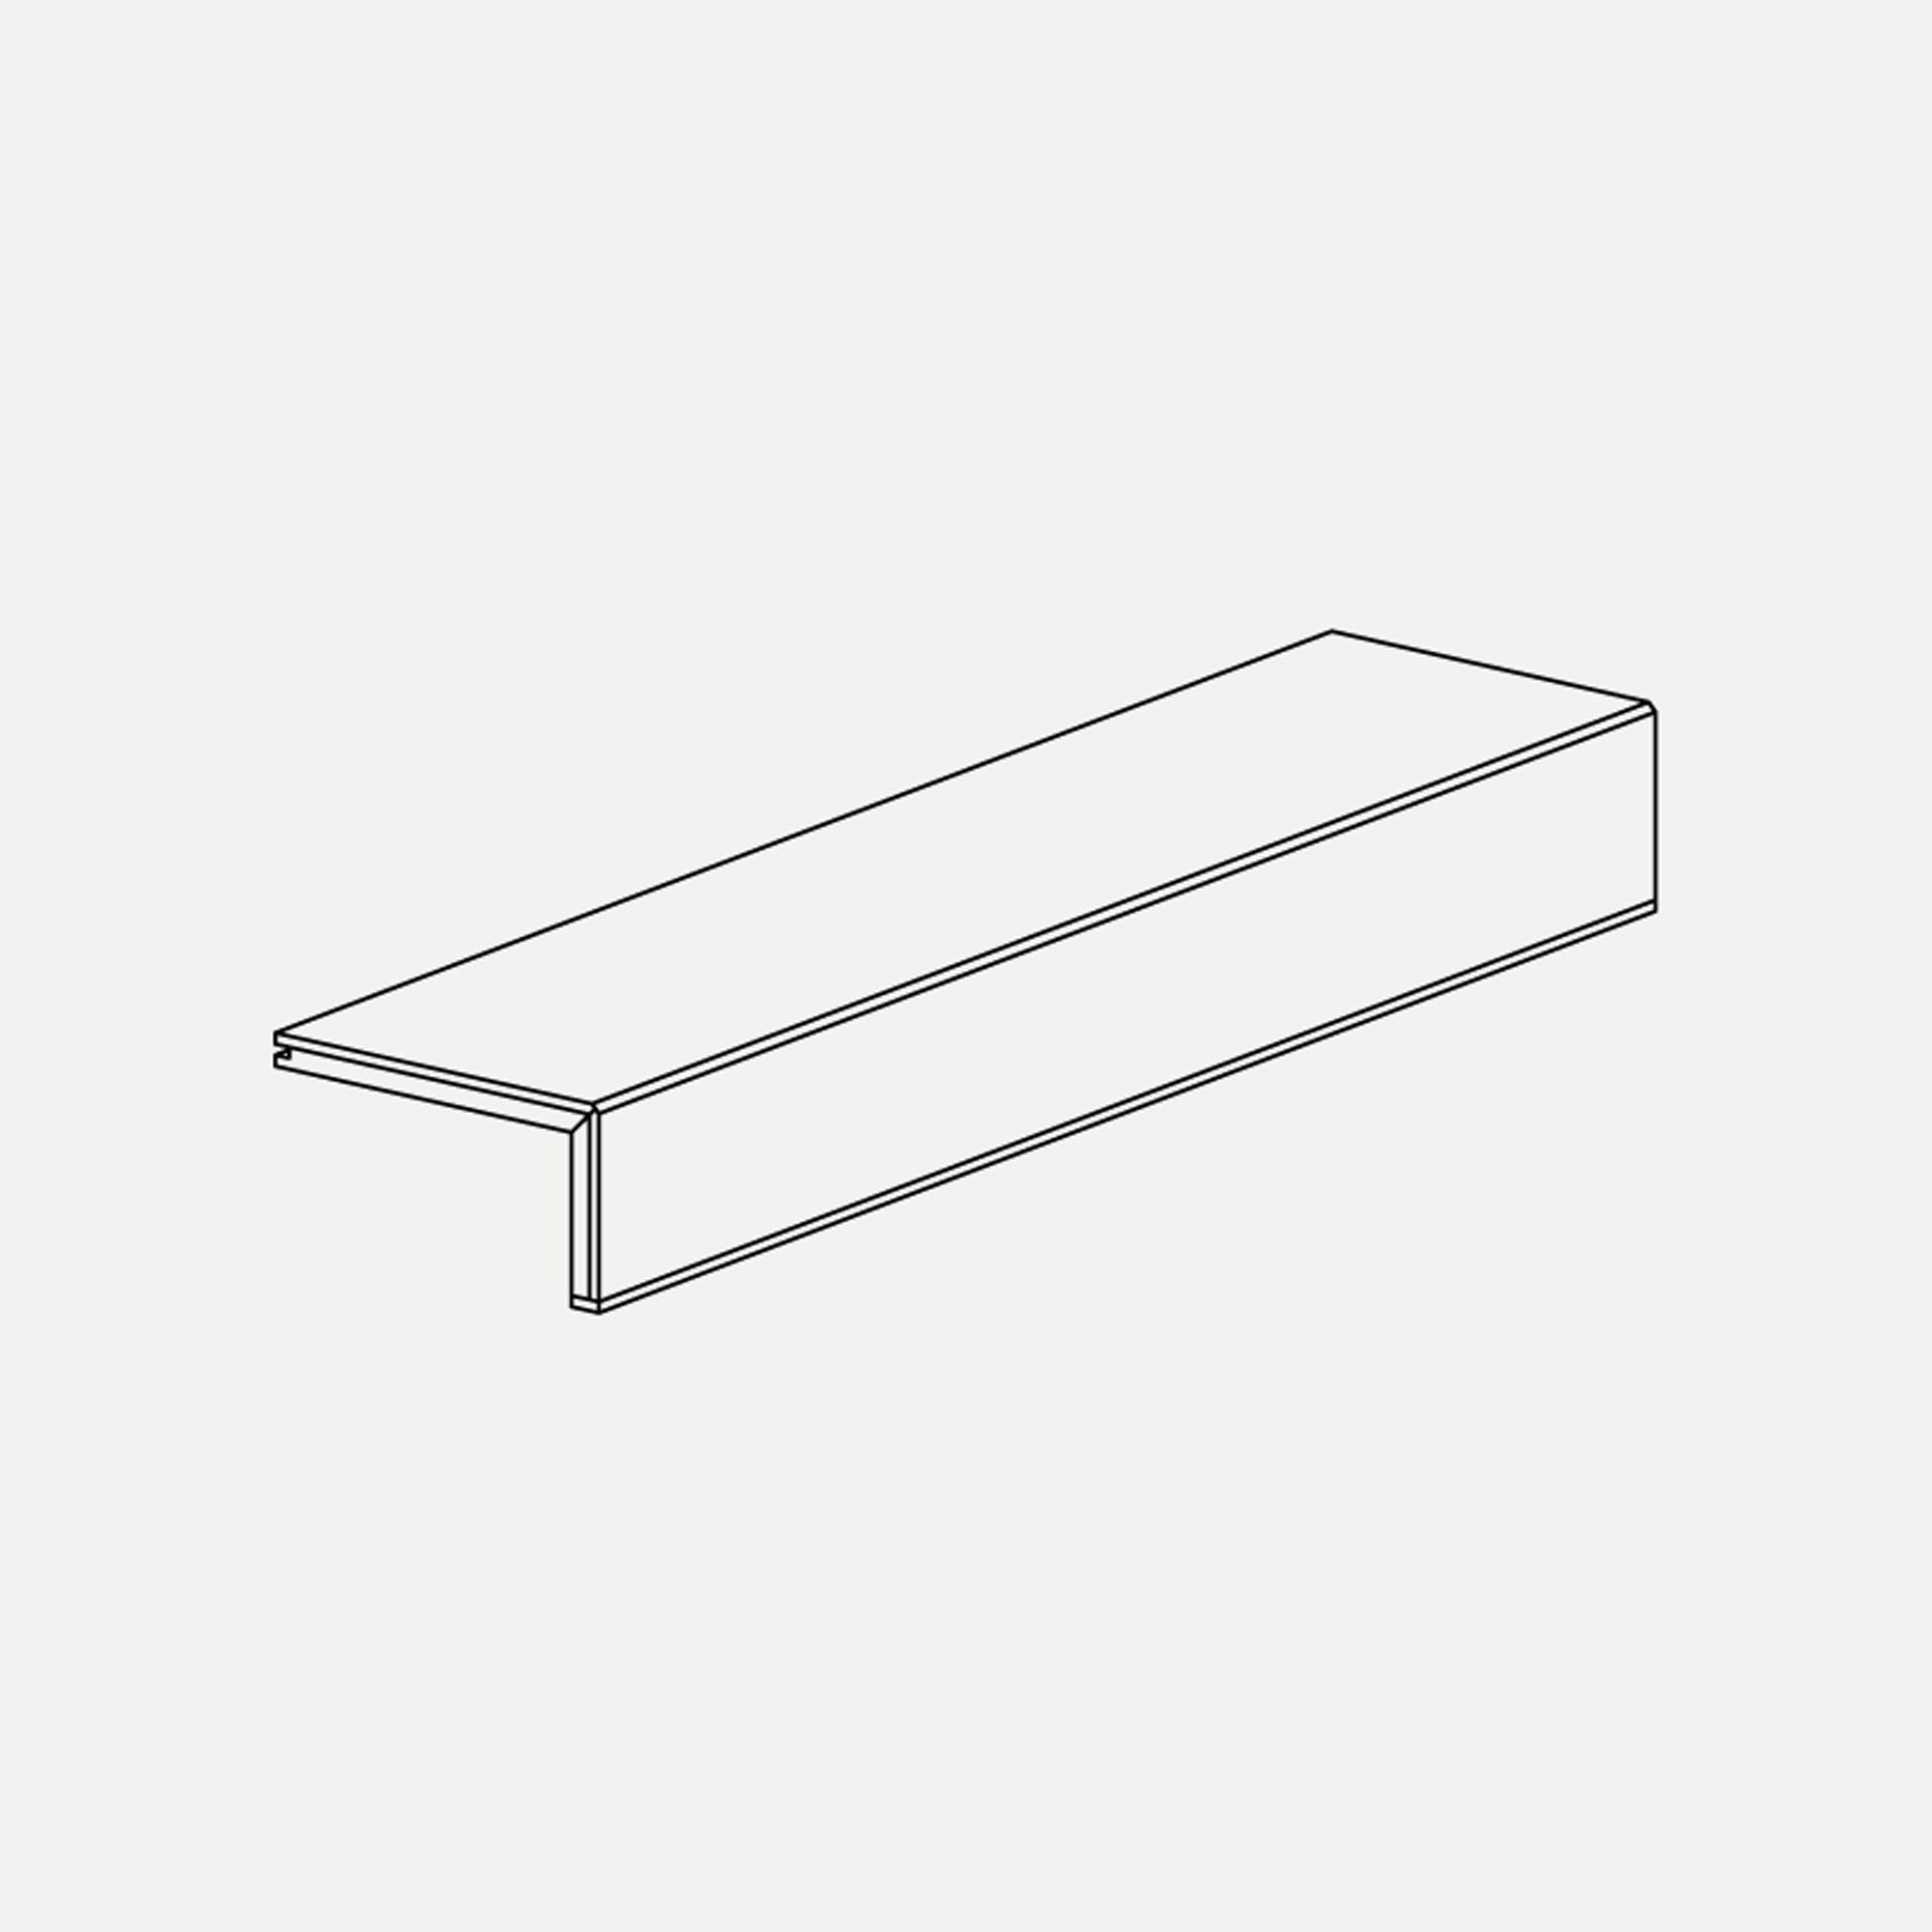 Planks 138 / Casapark 139 | Rovere | Crema | Profil per scale